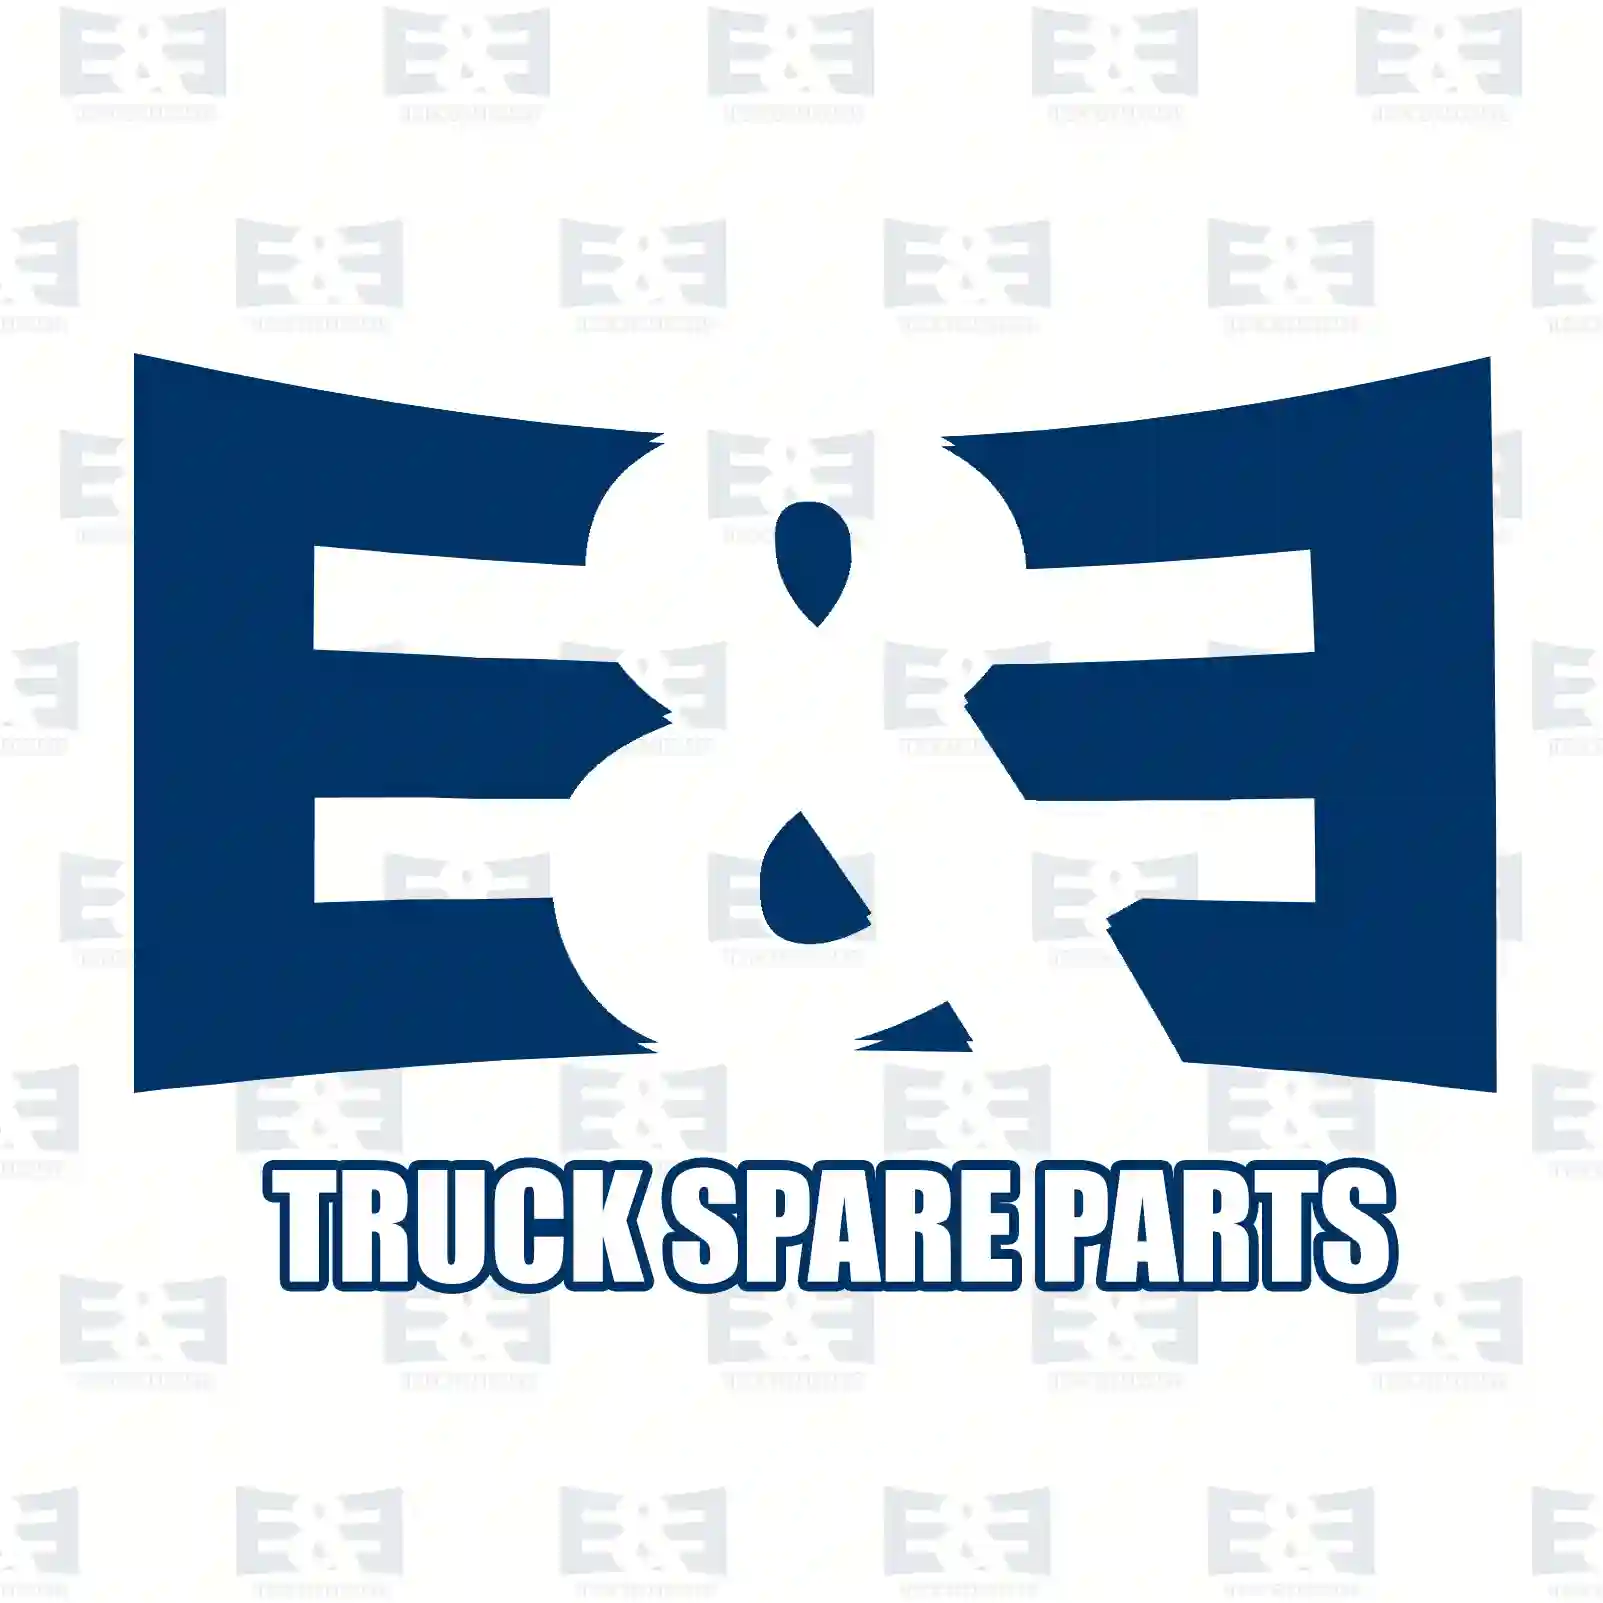 Bushing, 2E2276206, 7403192573, 31925 ||  2E2276206 E&E Truck Spare Parts | Truck Spare Parts, Auotomotive Spare Parts Bushing, 2E2276206, 7403192573, 31925 ||  2E2276206 E&E Truck Spare Parts | Truck Spare Parts, Auotomotive Spare Parts